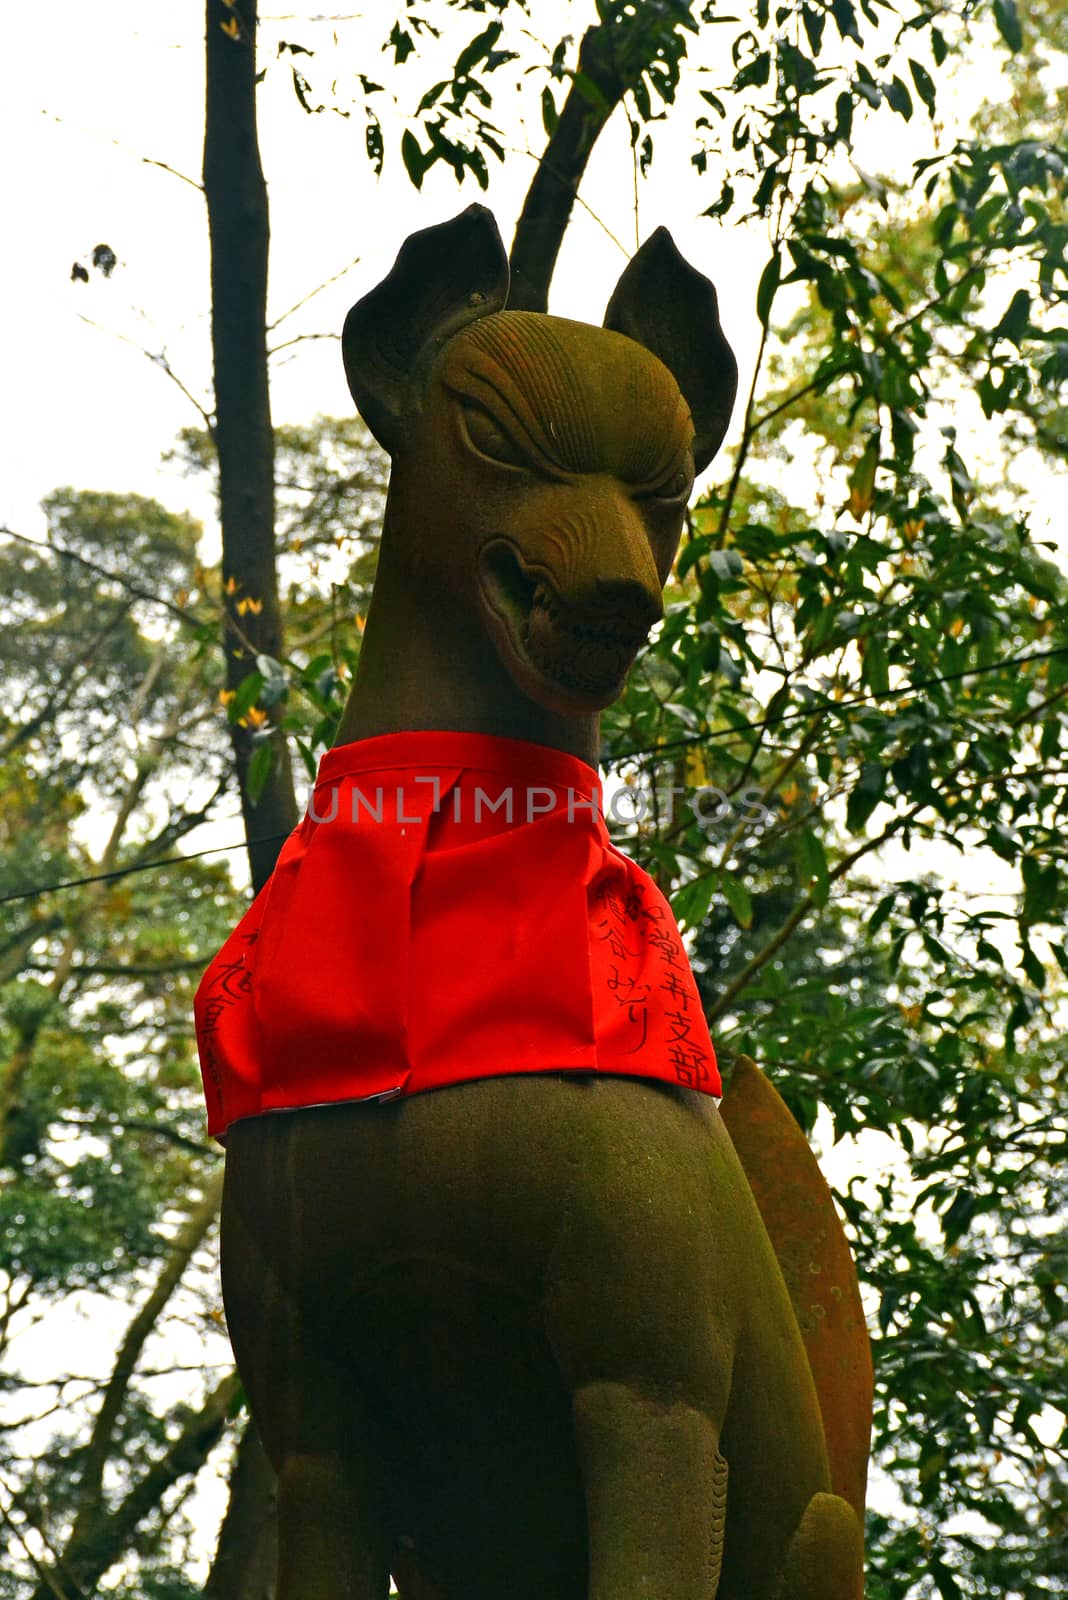 Fushimi Inari Taisha fox statue in Kyoto, Japan by imwaltersy